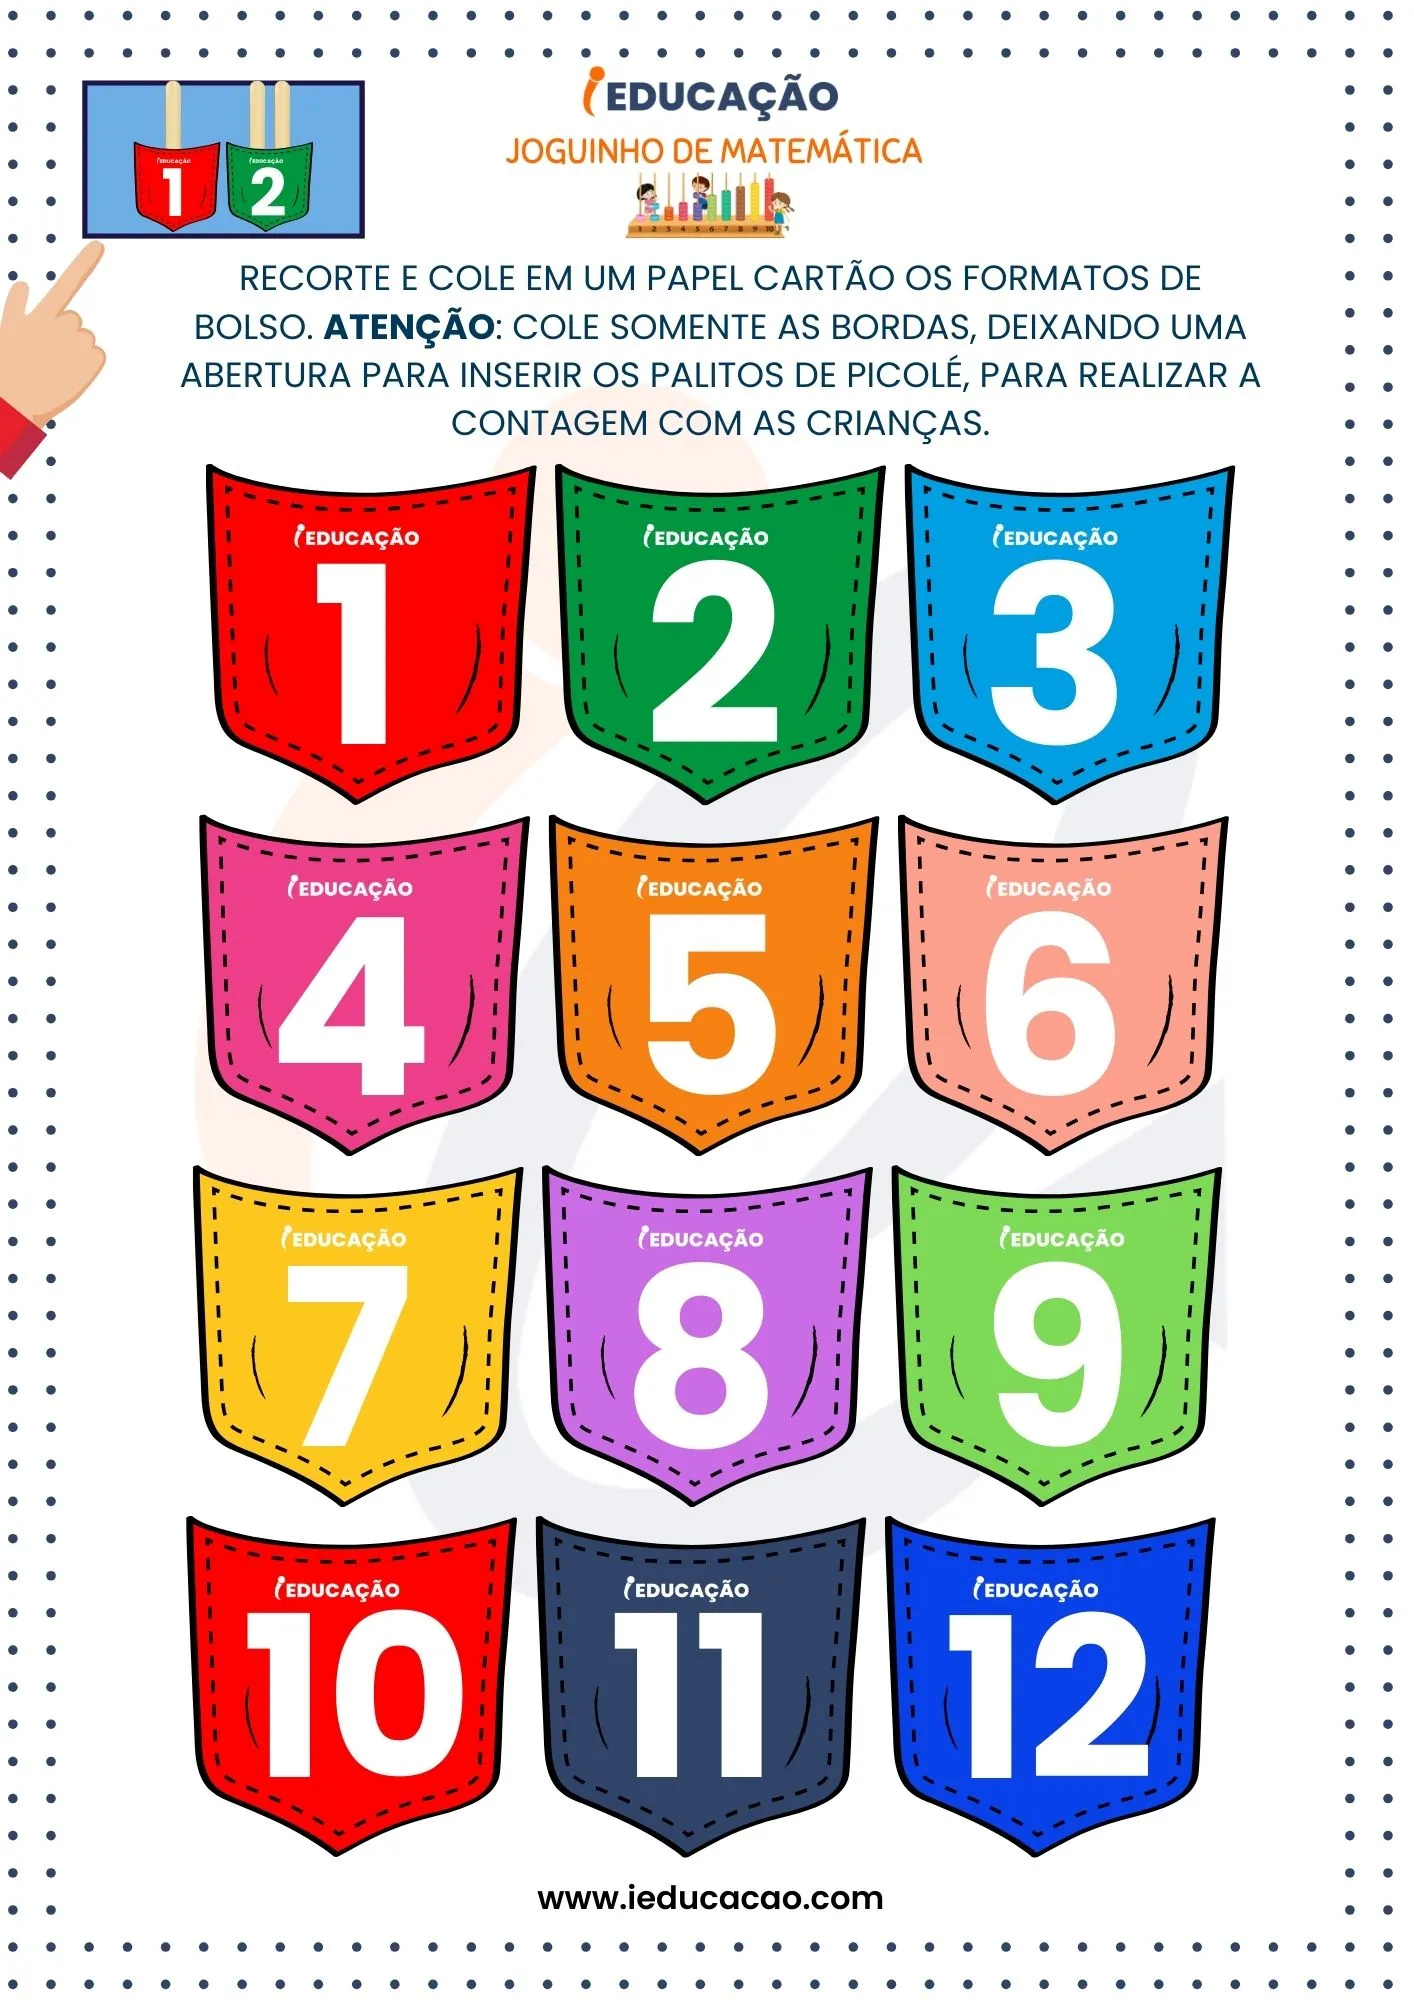 Joguinho de Matemática_ Números e Quantidades- Números na Educação Infantil